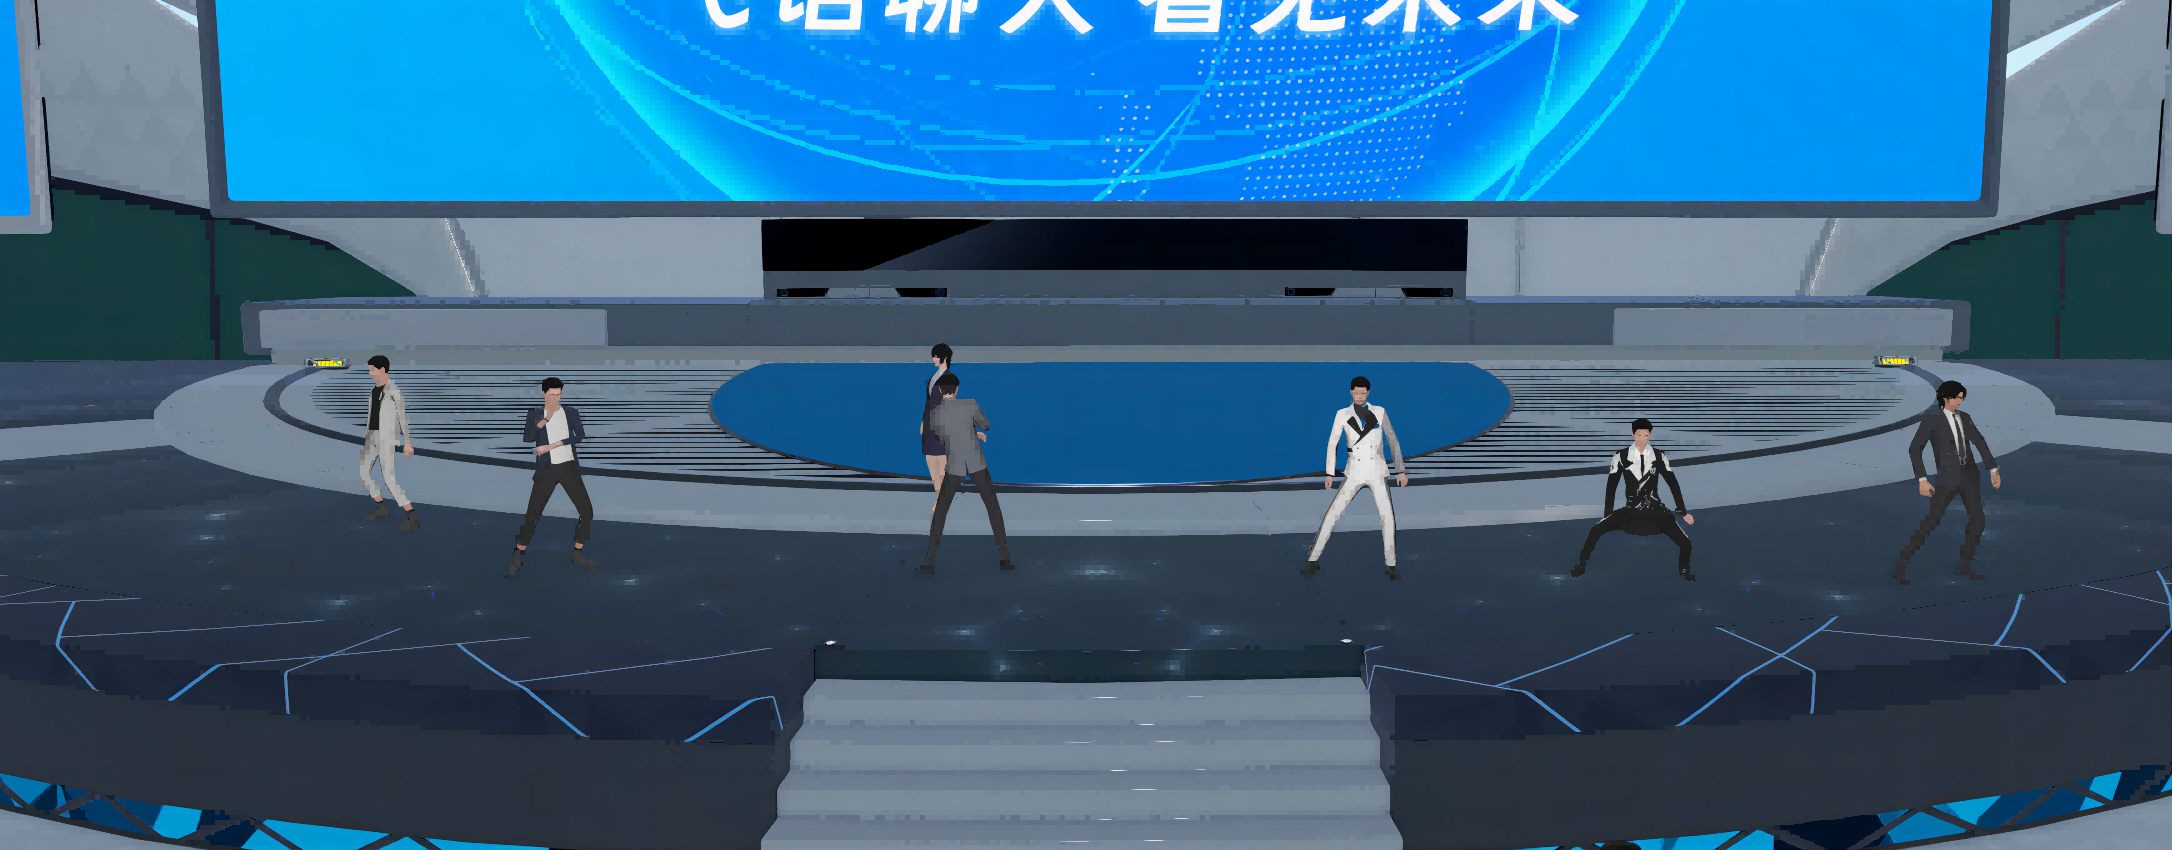 图片展示了几位穿着不同服装的人站在舞台上，背景是一个大屏幕，上面写着“欢迎光临虚拟现实”。